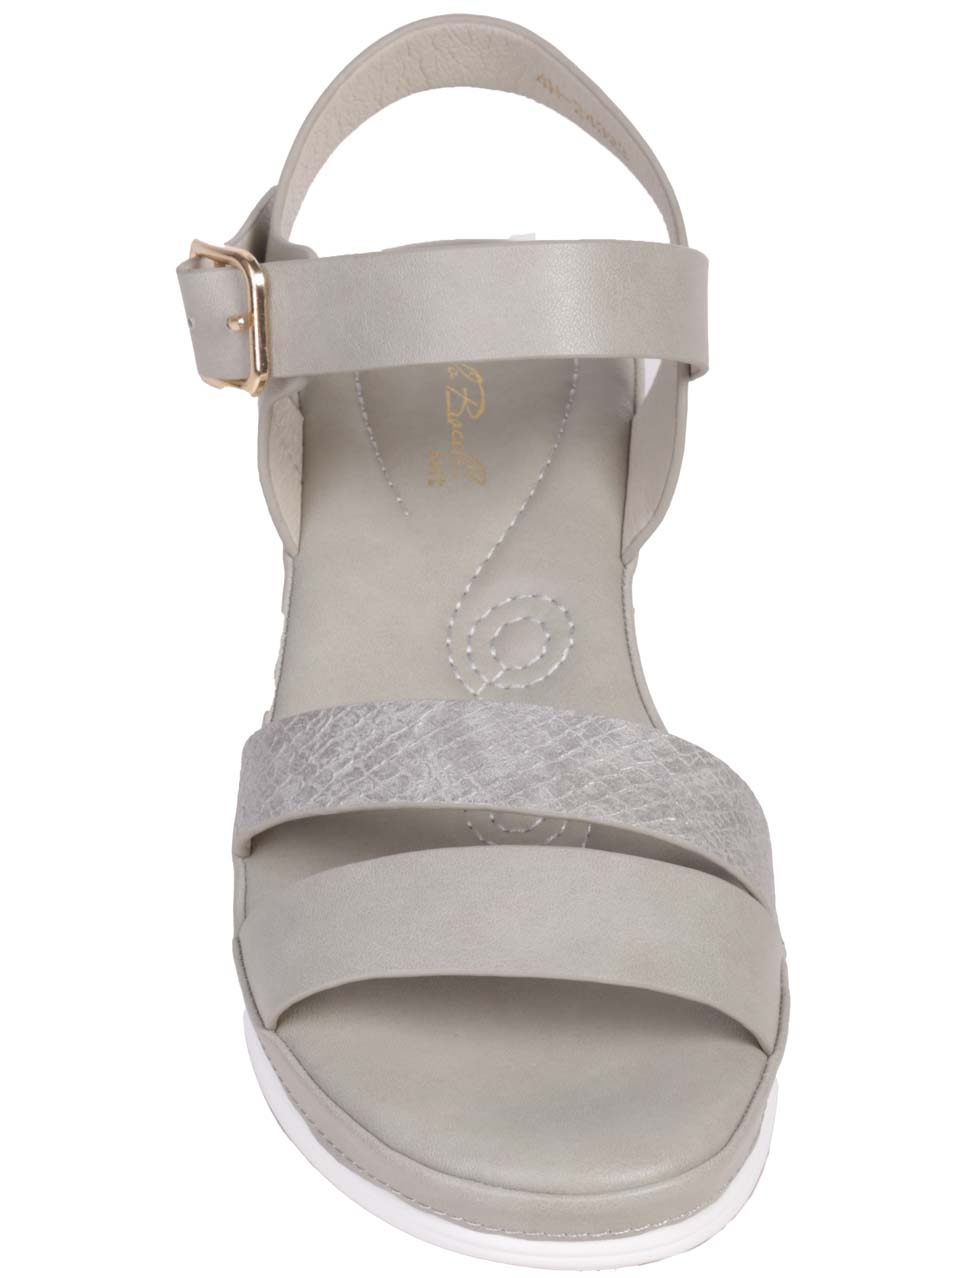 Ежедневни дамски сандали на платформа в сив цвят 4H-24323 grey